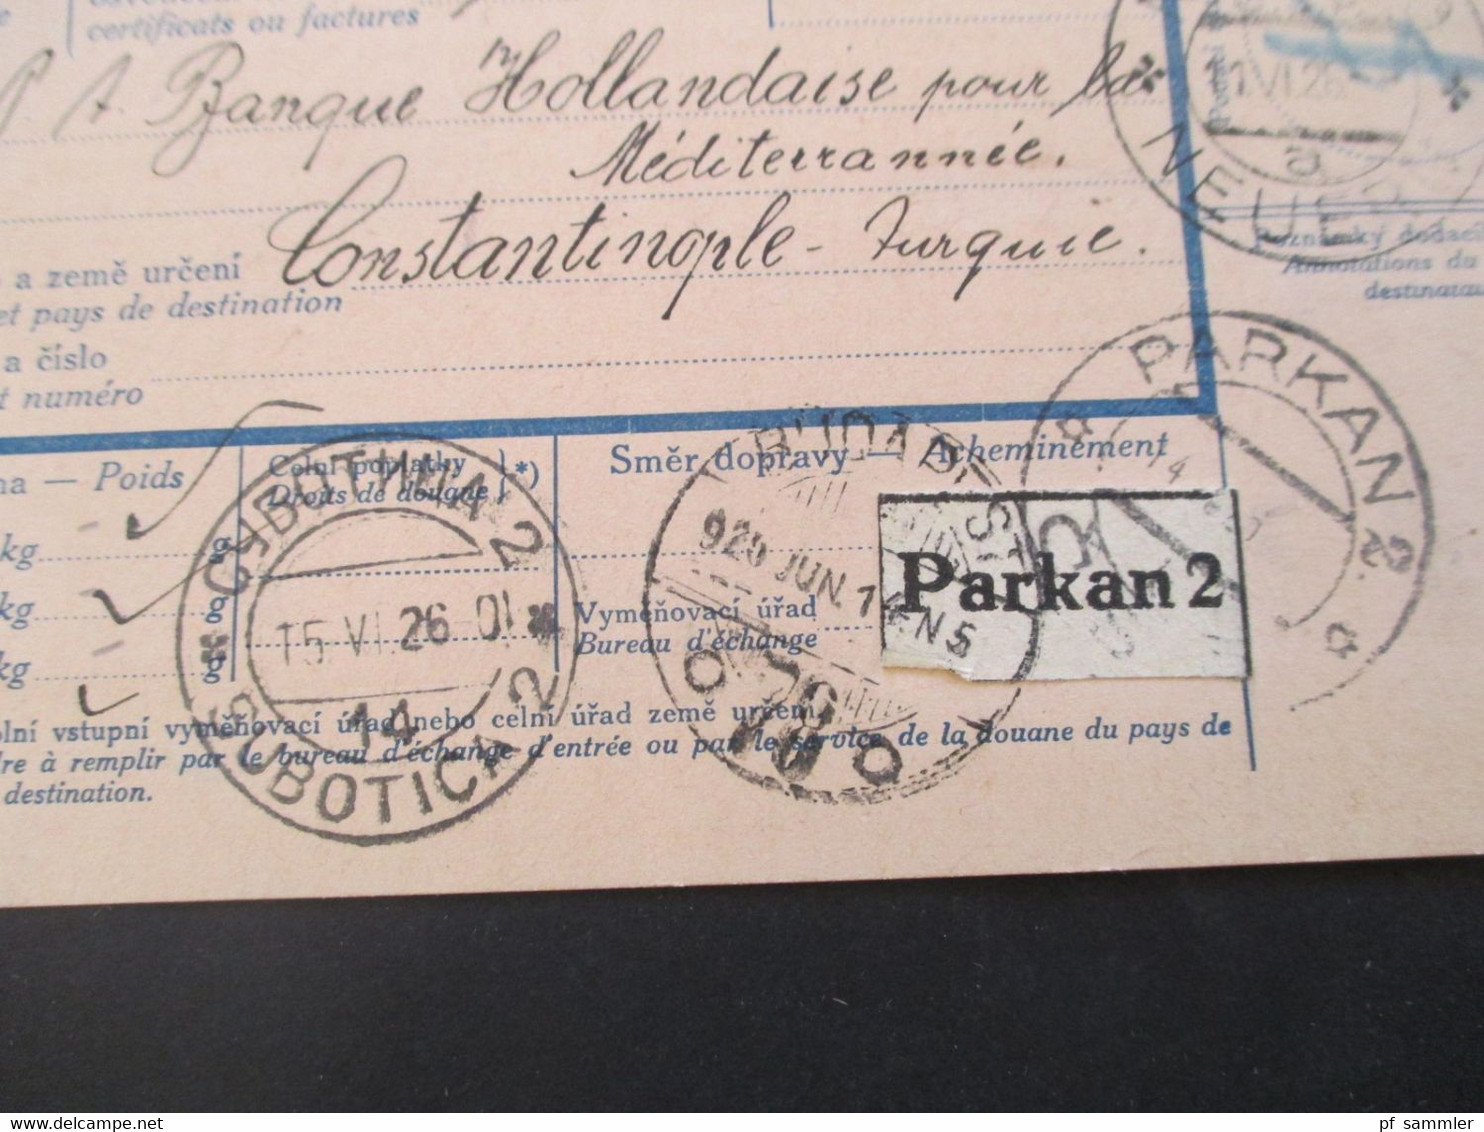 CSSR 1926 Paketkarte Nyrsko Neuern Sudetenland - Constantinople rücks. Marken der Türkei, Viele Stempel